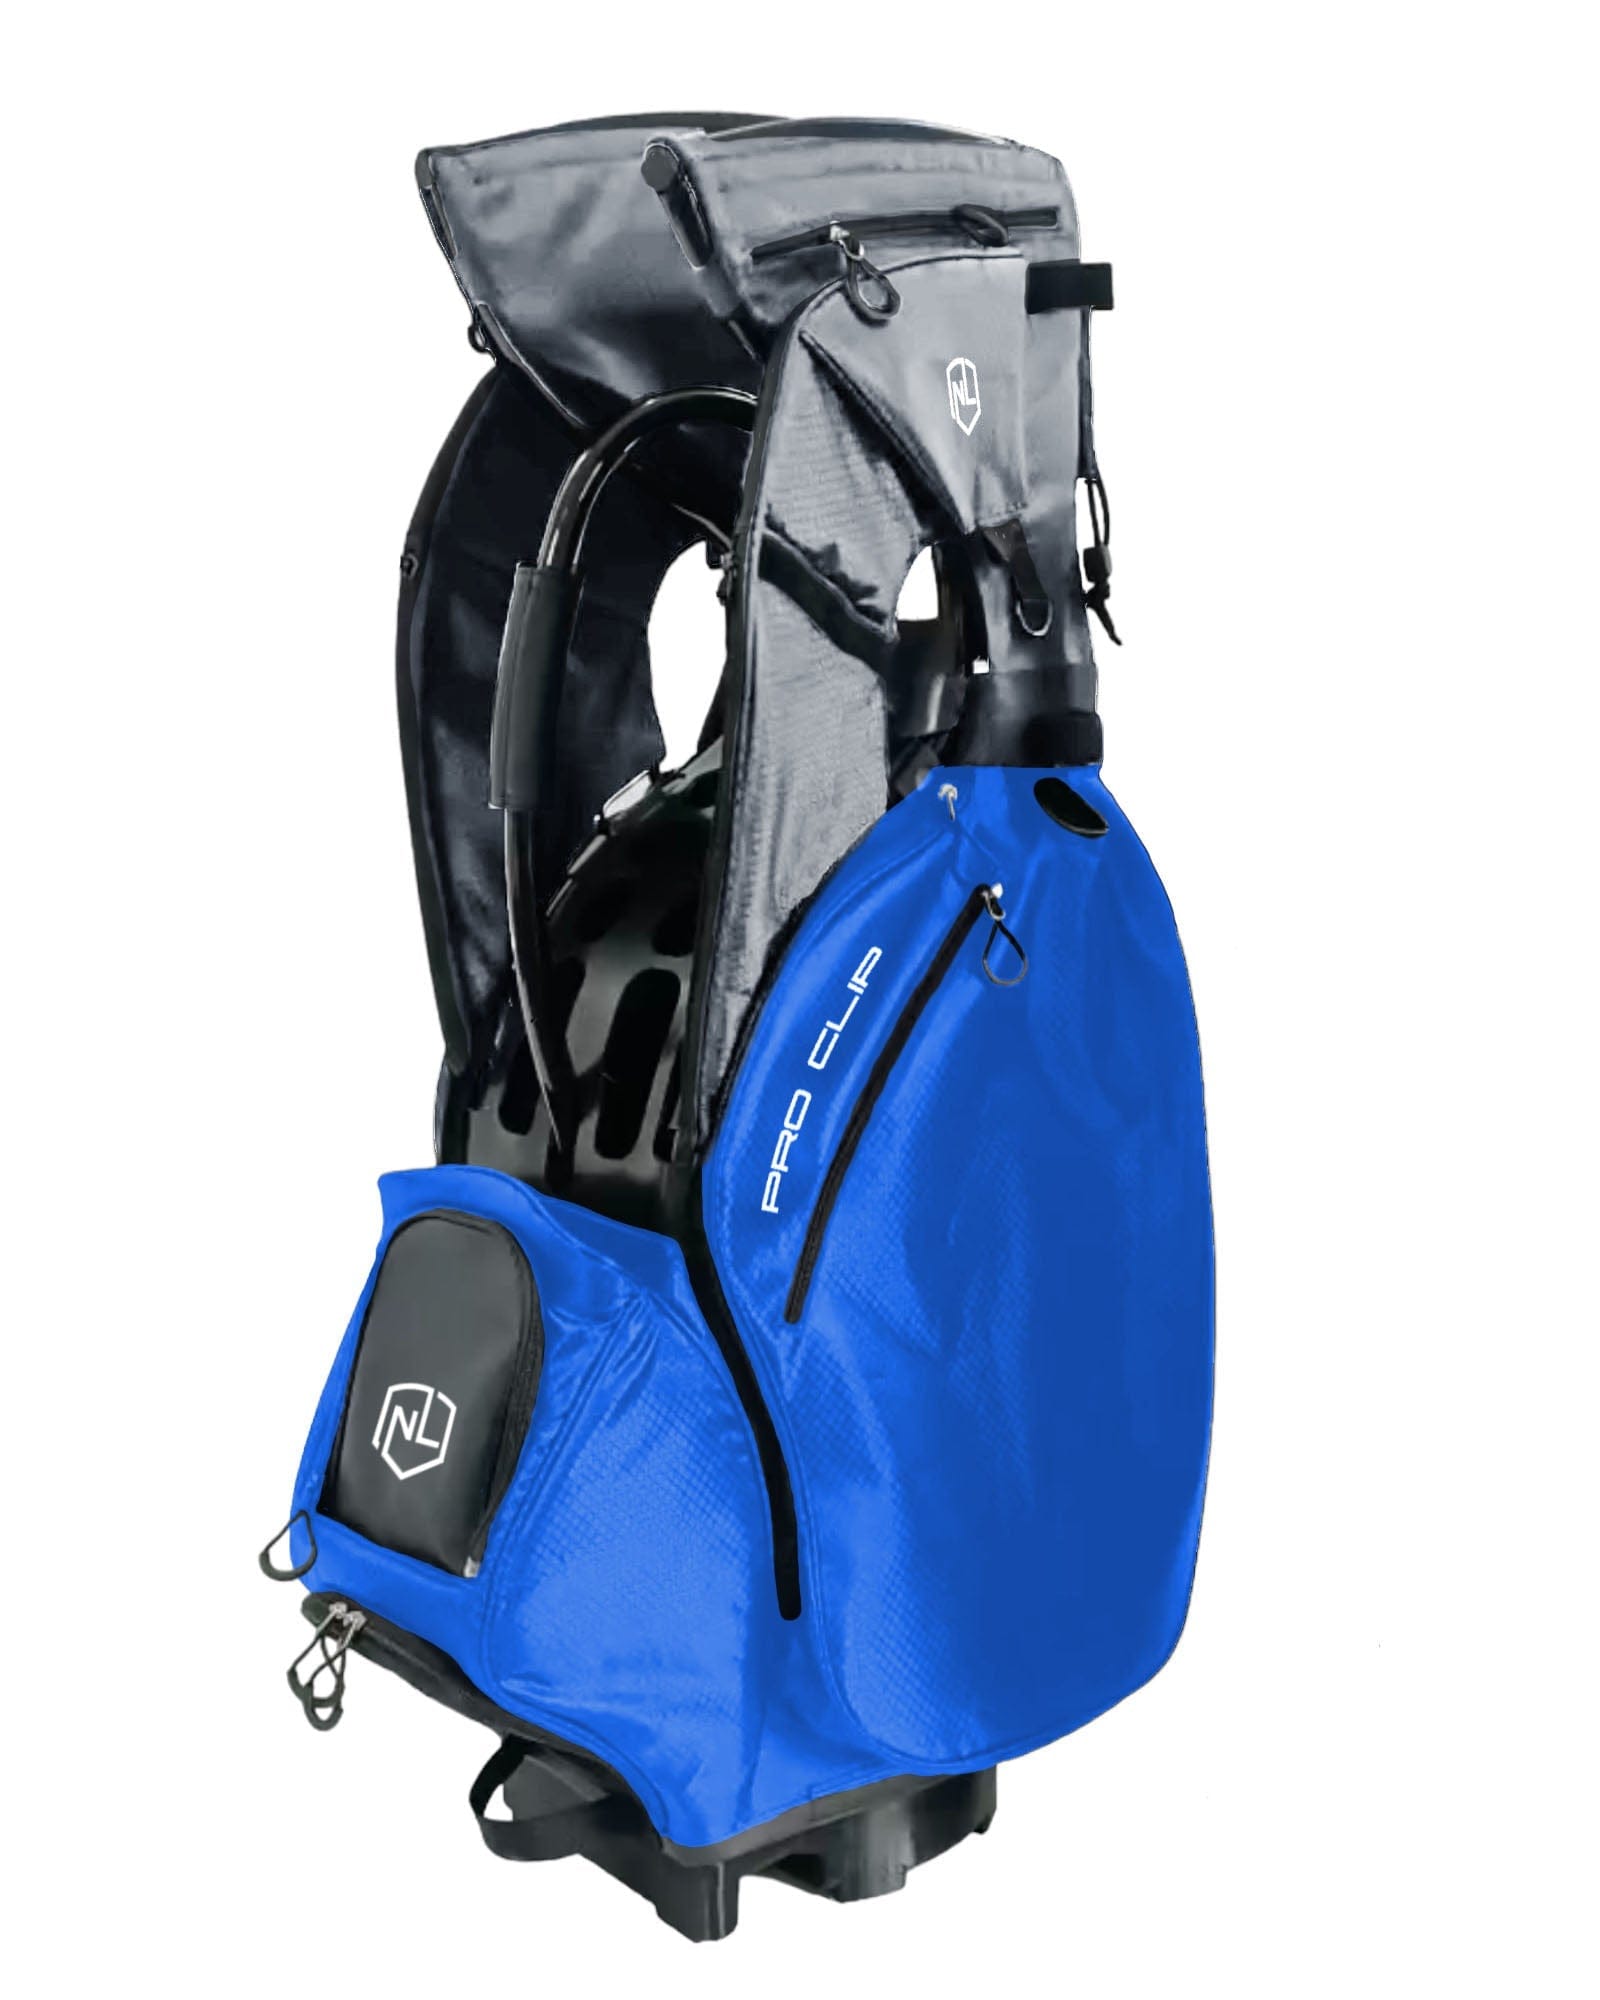 Exoskin golf bags royal